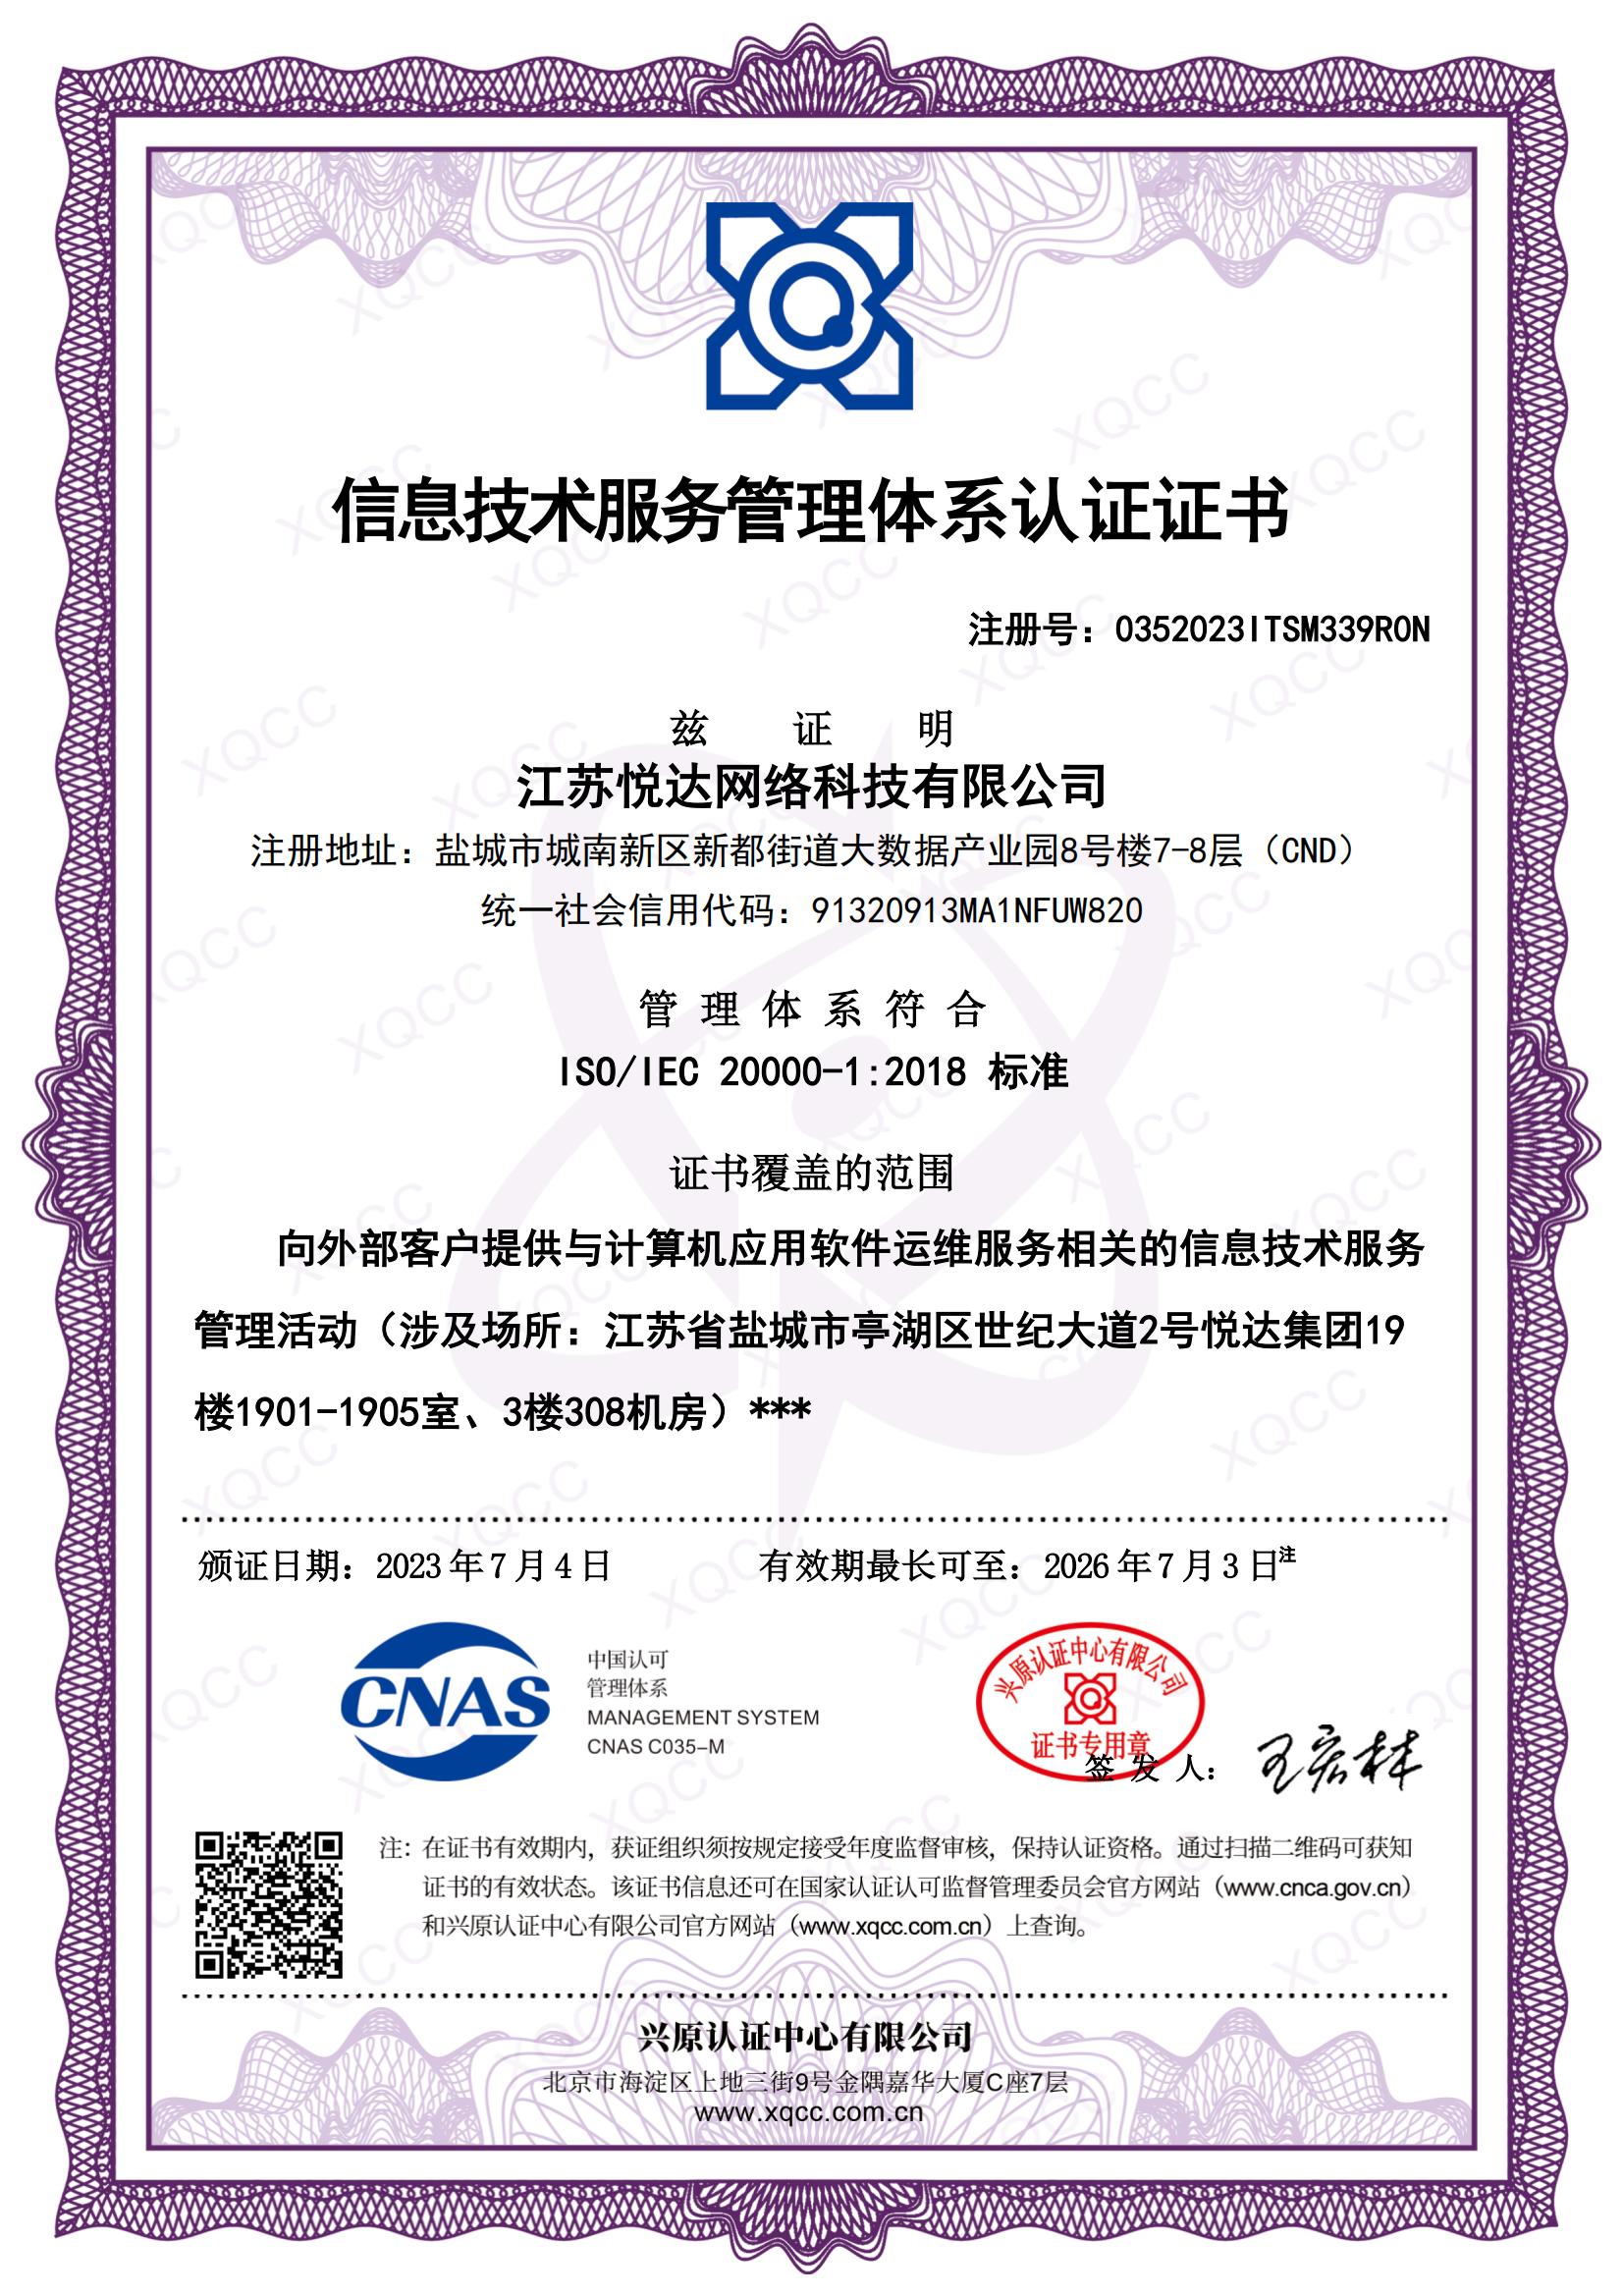 ISO IEC 20000-1：2018 中(zhōng)文證書(shū) 頒證日期20230704.jpg